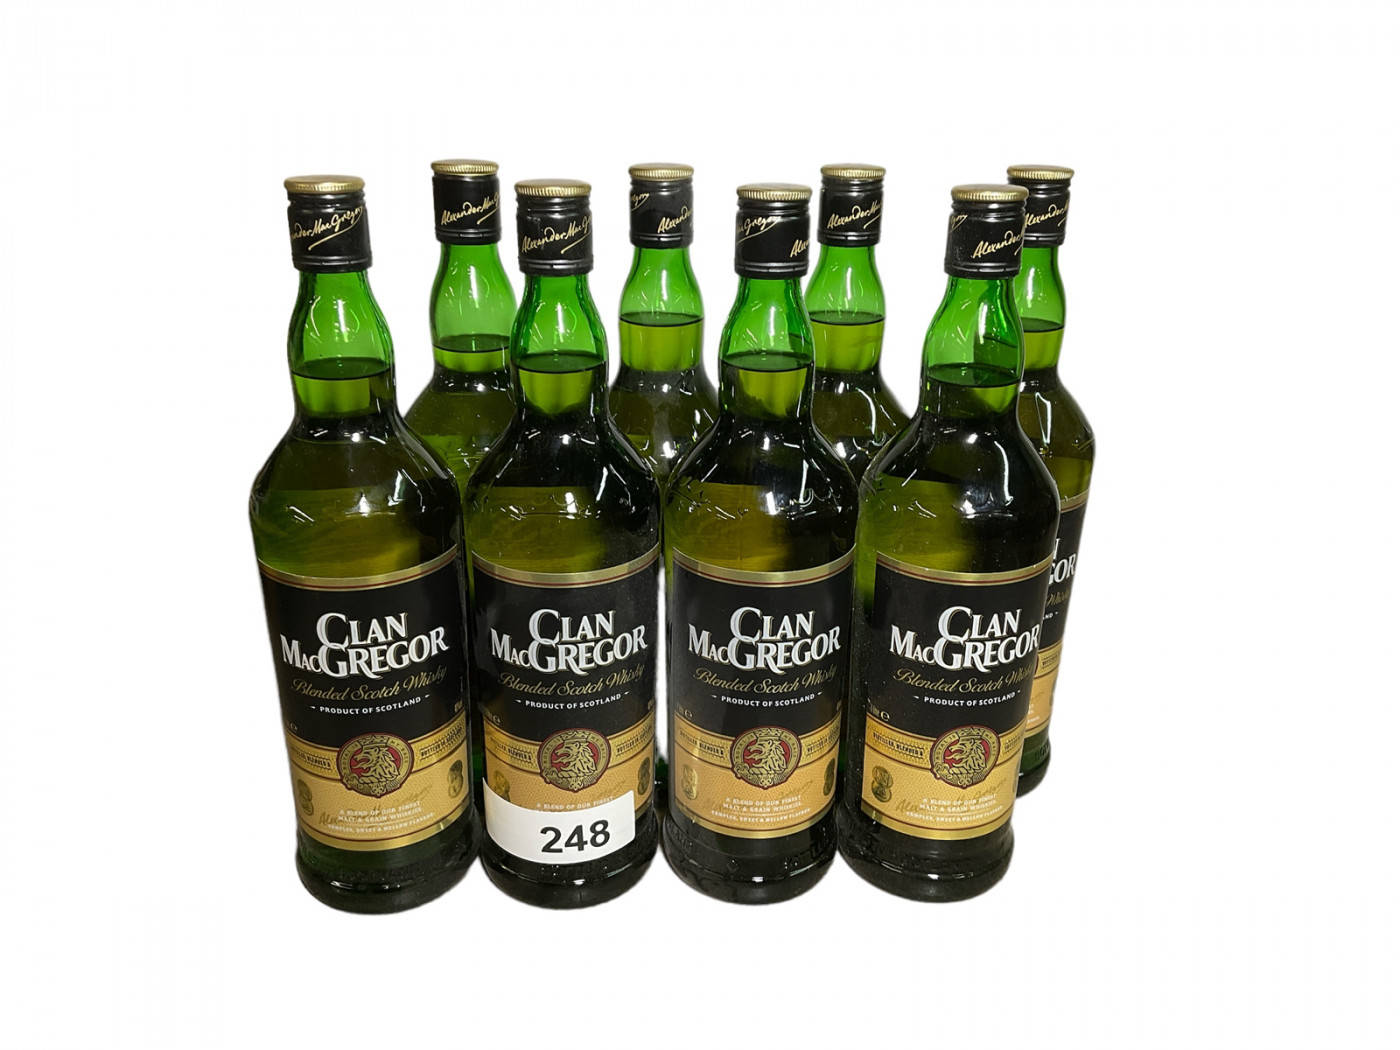 Clan Macgregor Blended Scotch Bottles Wallpaper